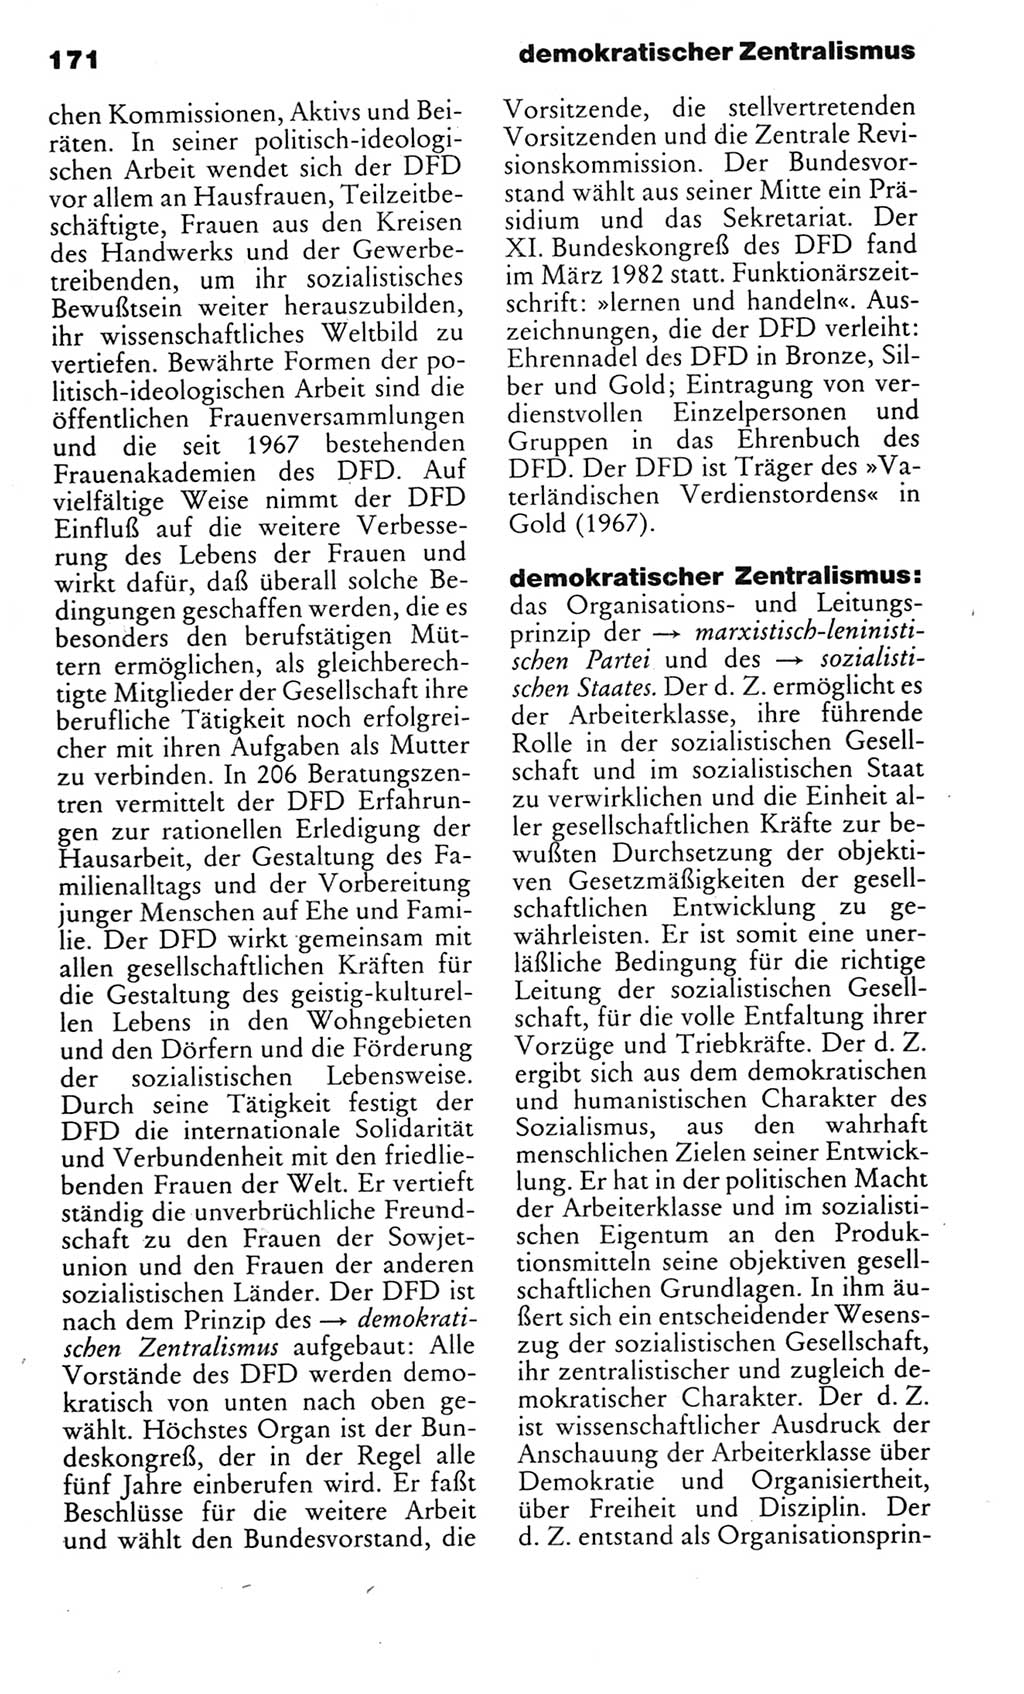 Kleines politisches Wörterbuch [Deutsche Demokratische Republik (DDR)] 1983, Seite 171 (Kl. pol. Wb. DDR 1983, S. 171)